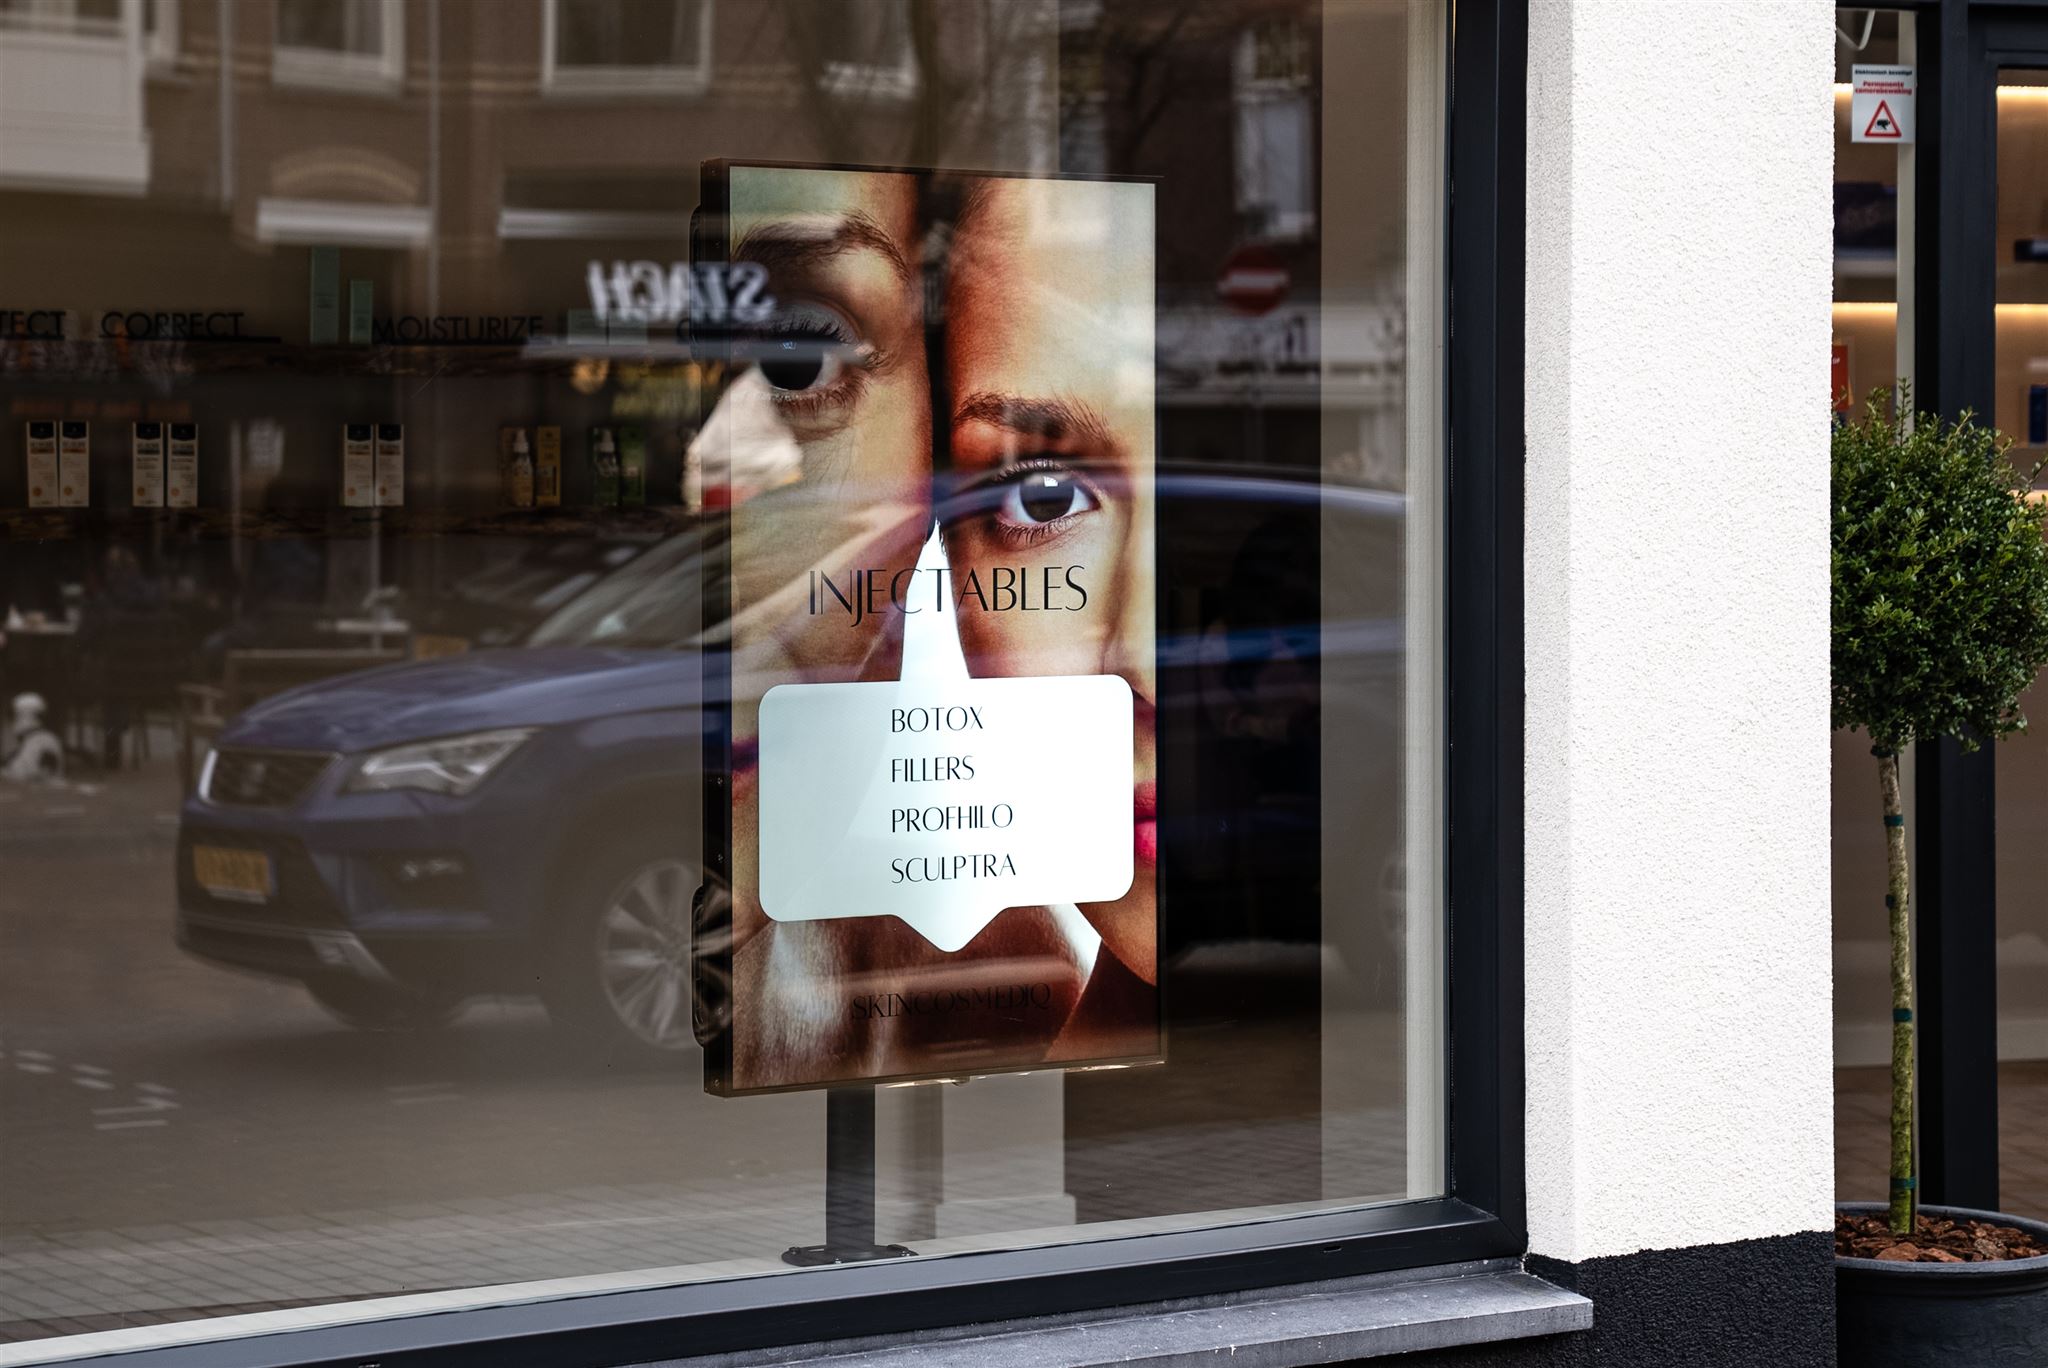 Digital Signage Display in Winkel Etalage